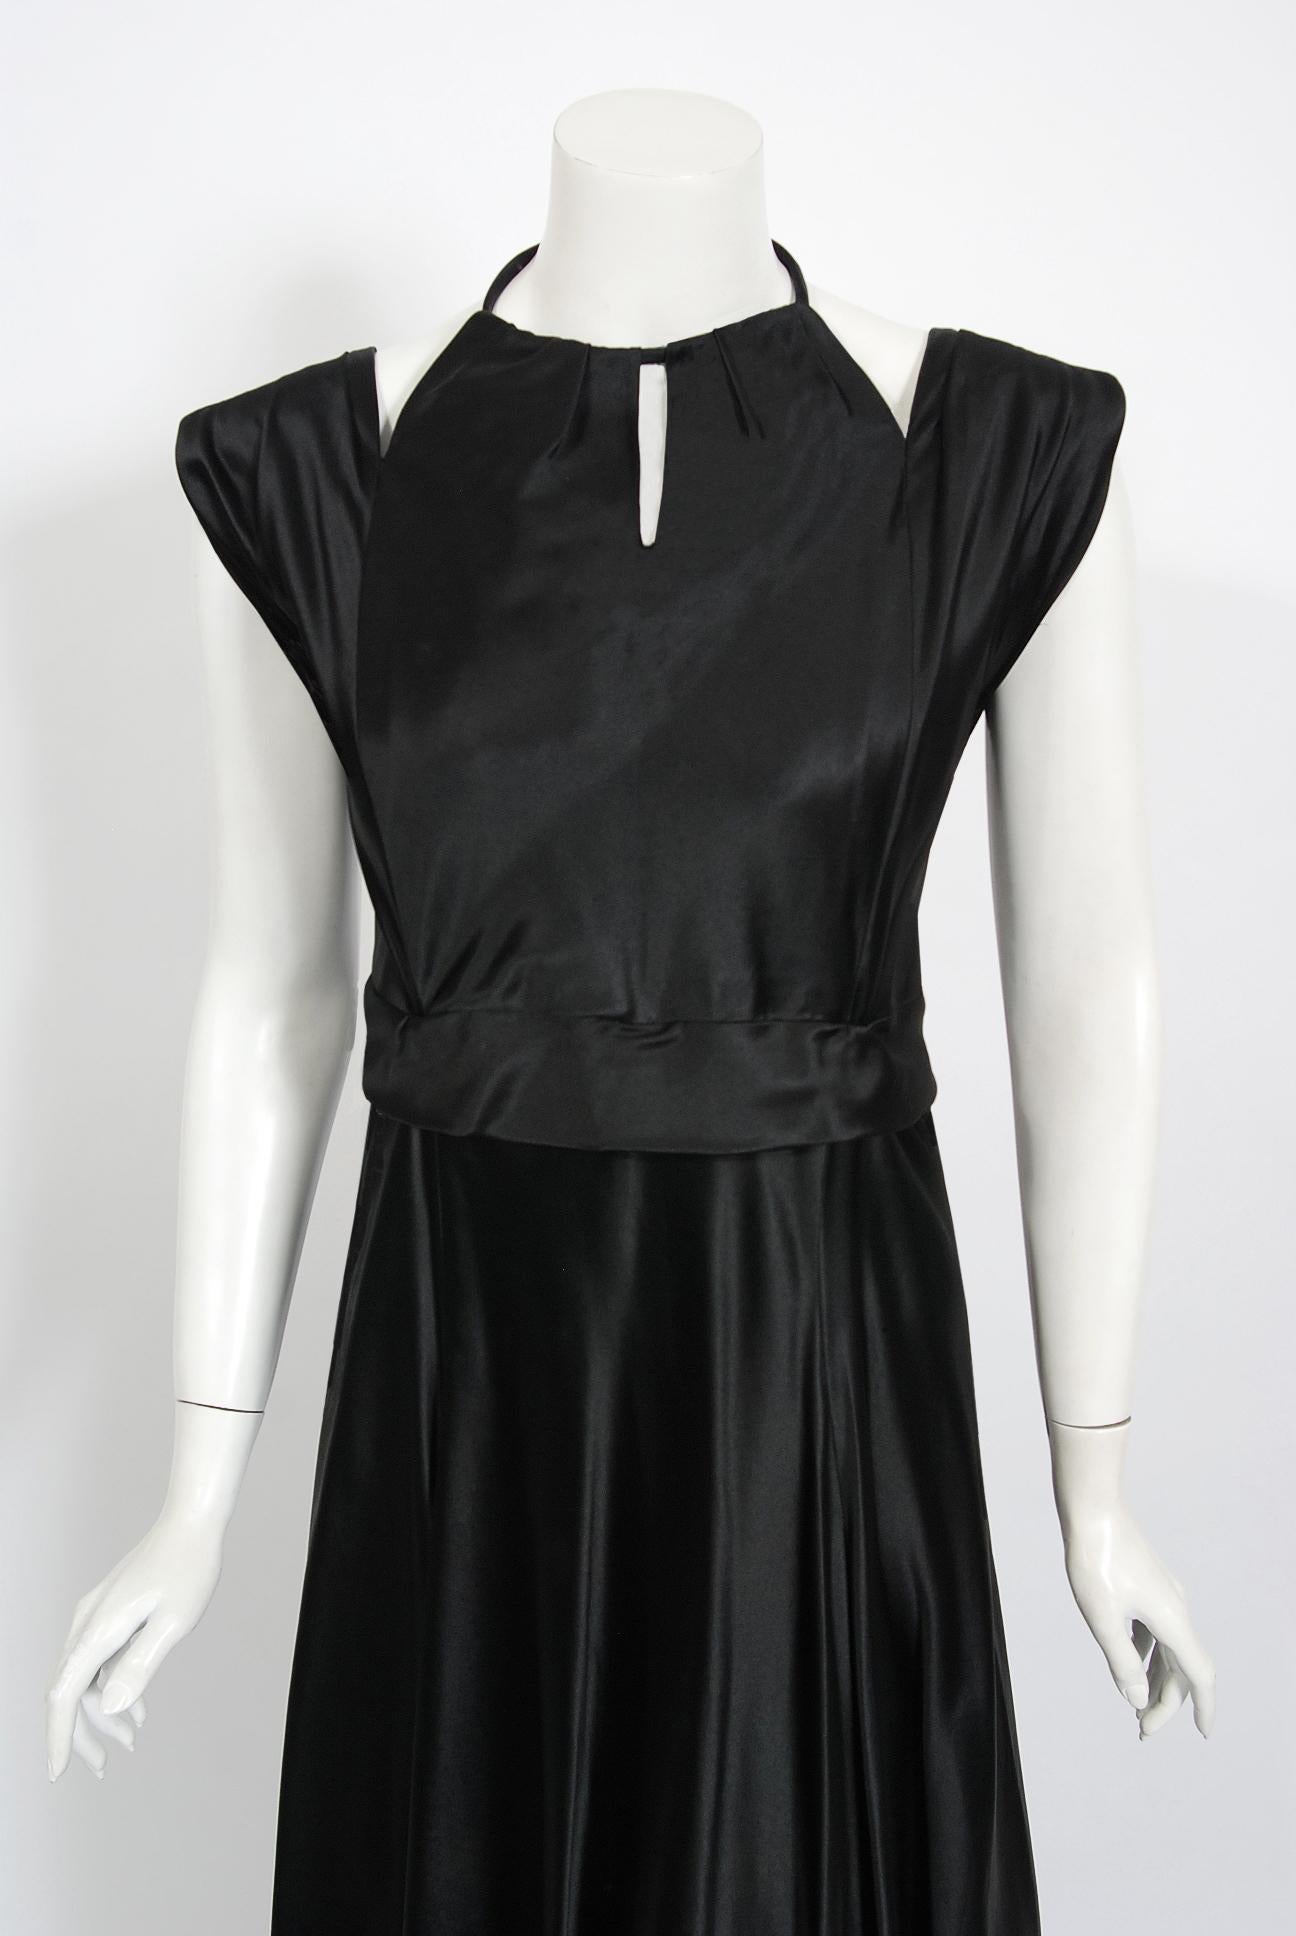 Ein atemberaubendes und unglaublich seltenes bodenlanges Kleid des französischen Modeschöpfers Marcelle Dormoy aus den frühen 1940er Jahren. Angefangen hat sie als Model für Paul Poiret, der ihr ihrer Meinung nach geholfen hat, 